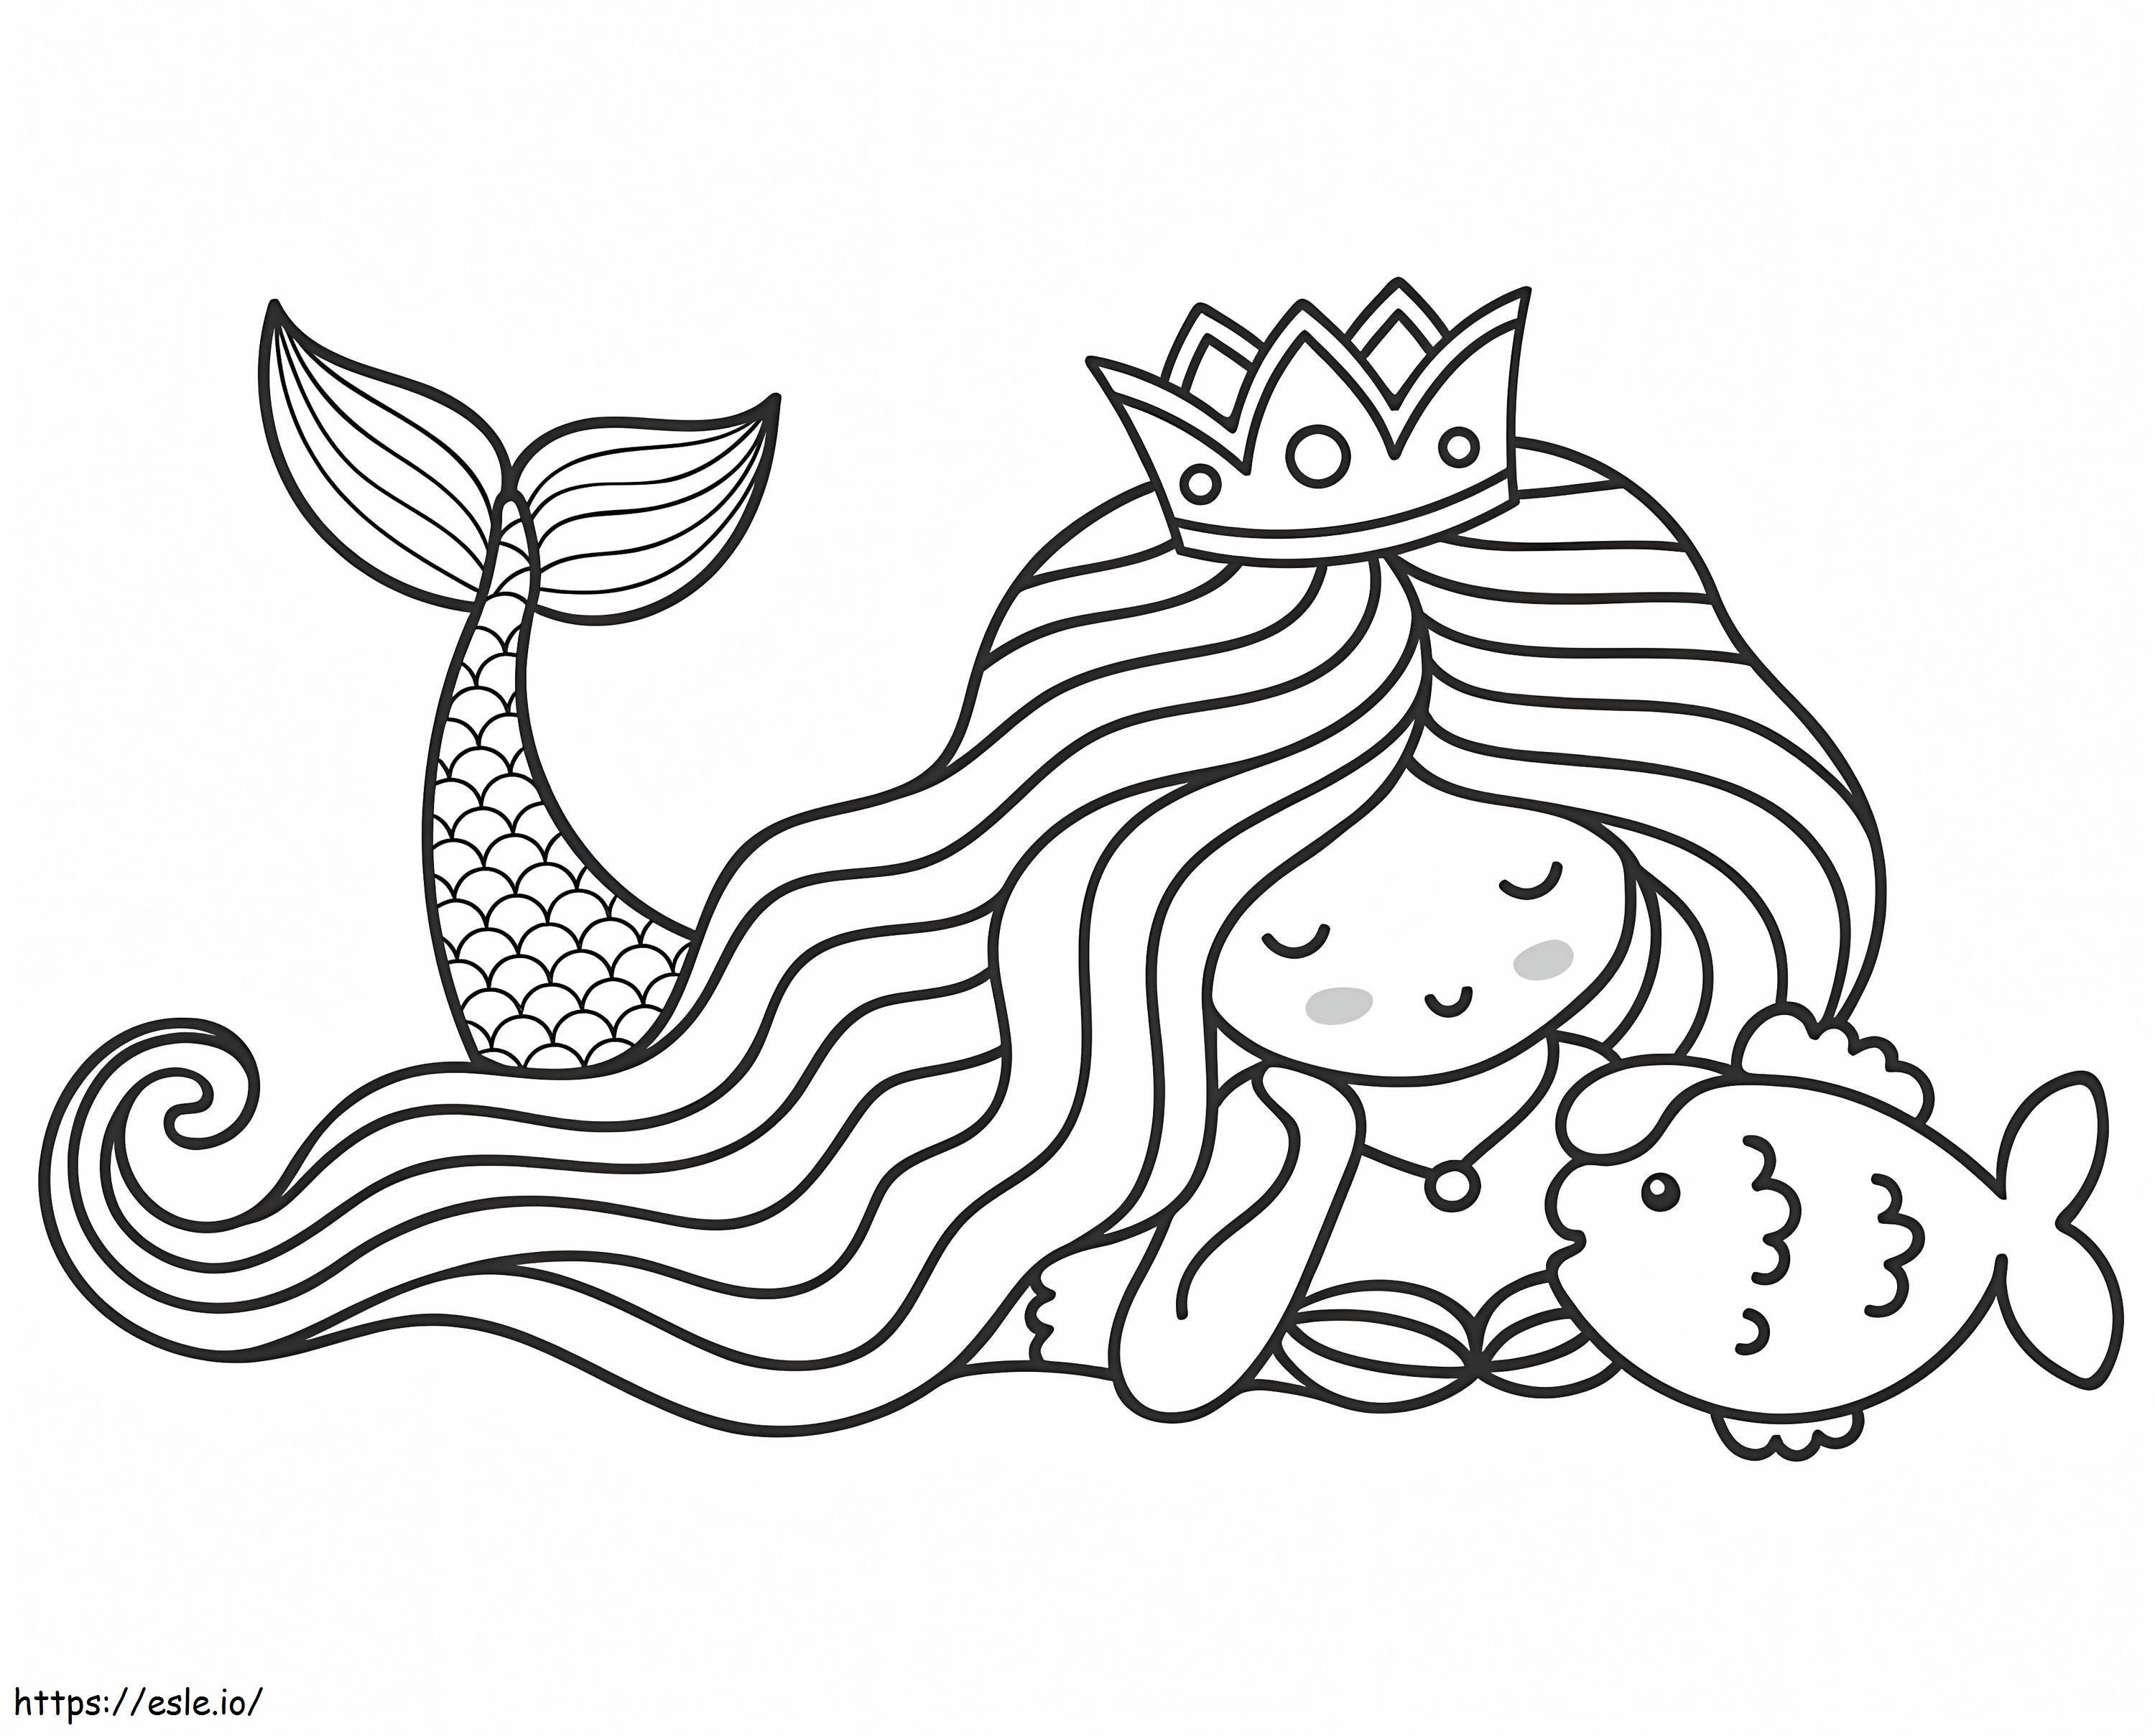 Meerjungfrau und Fisch ausmalbilder